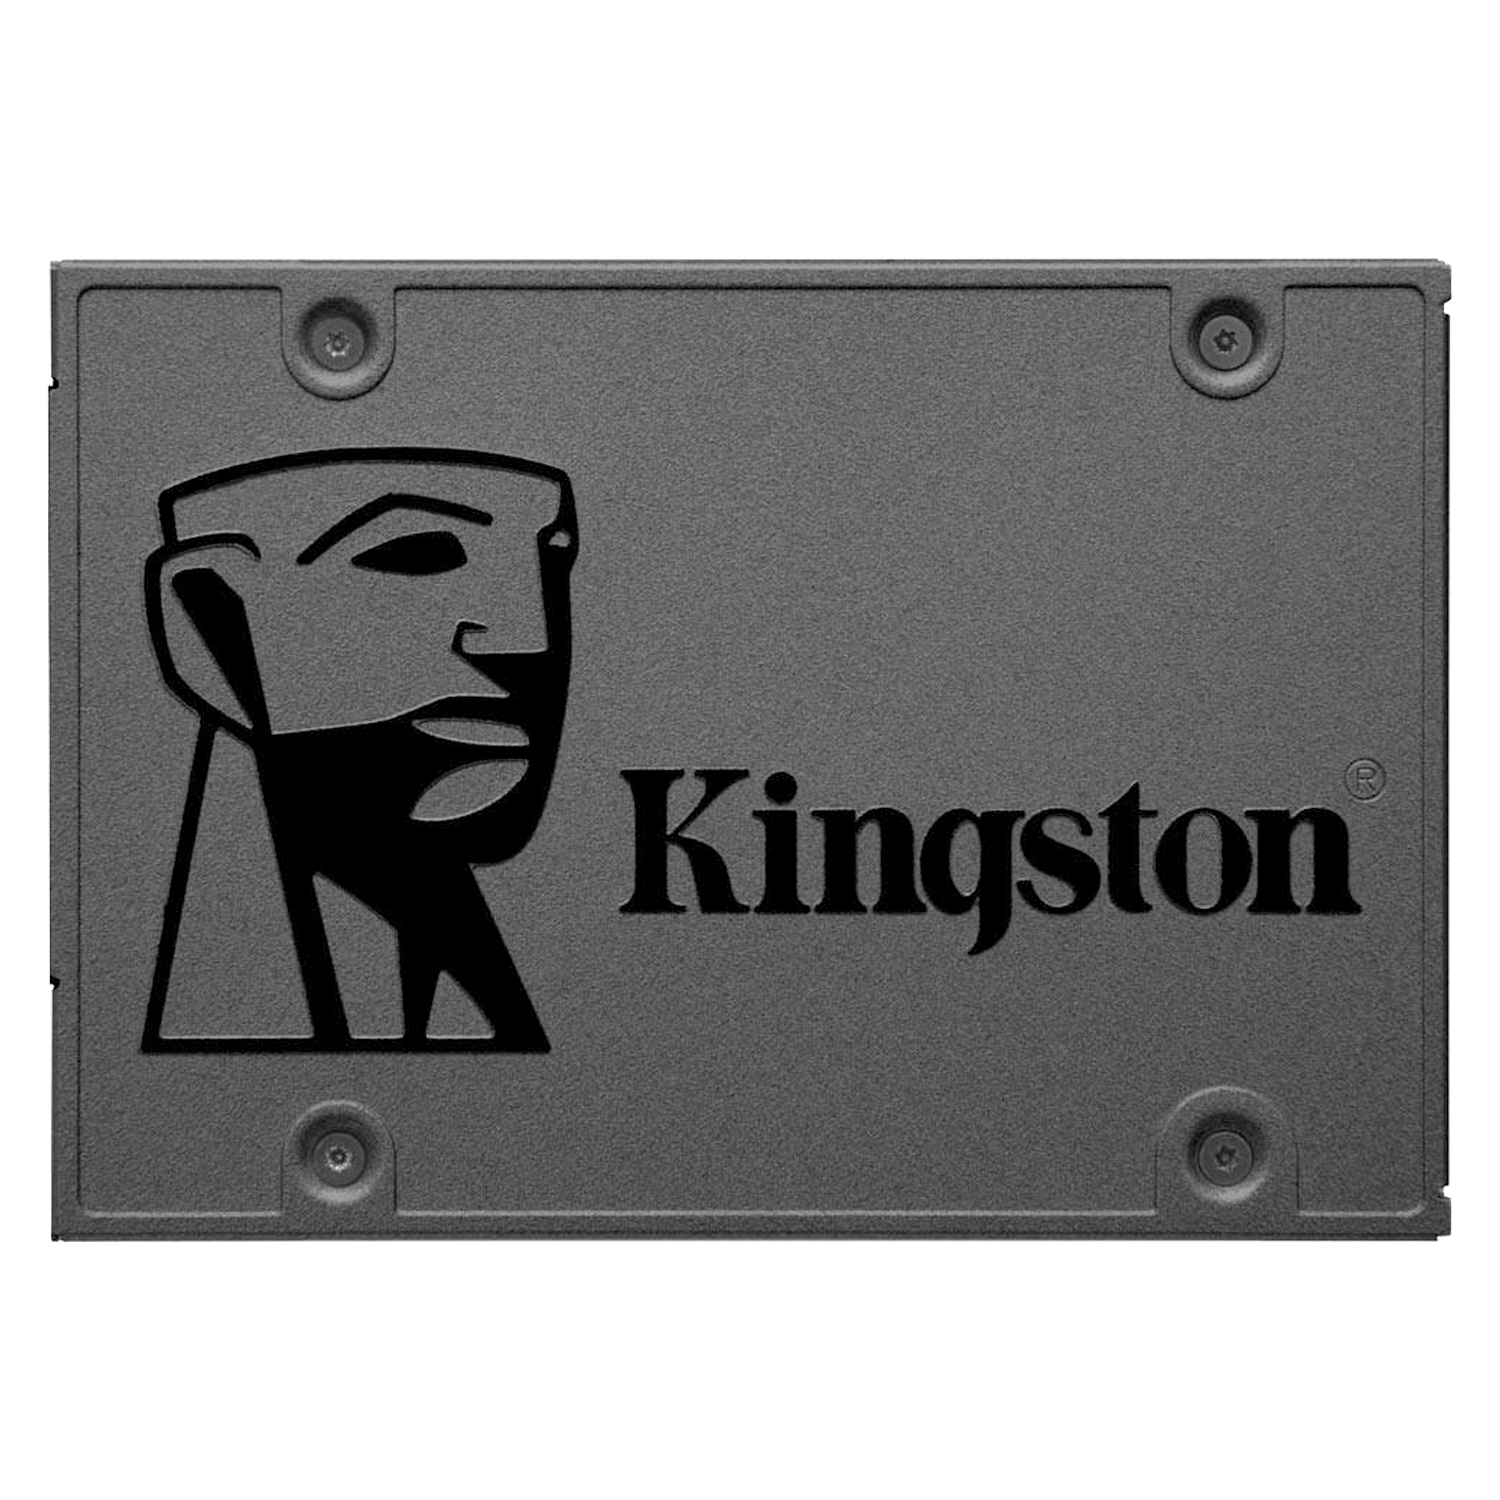 SSD Kingston A400 120GB 2.5" SATA 3 - SA400S37/120G
